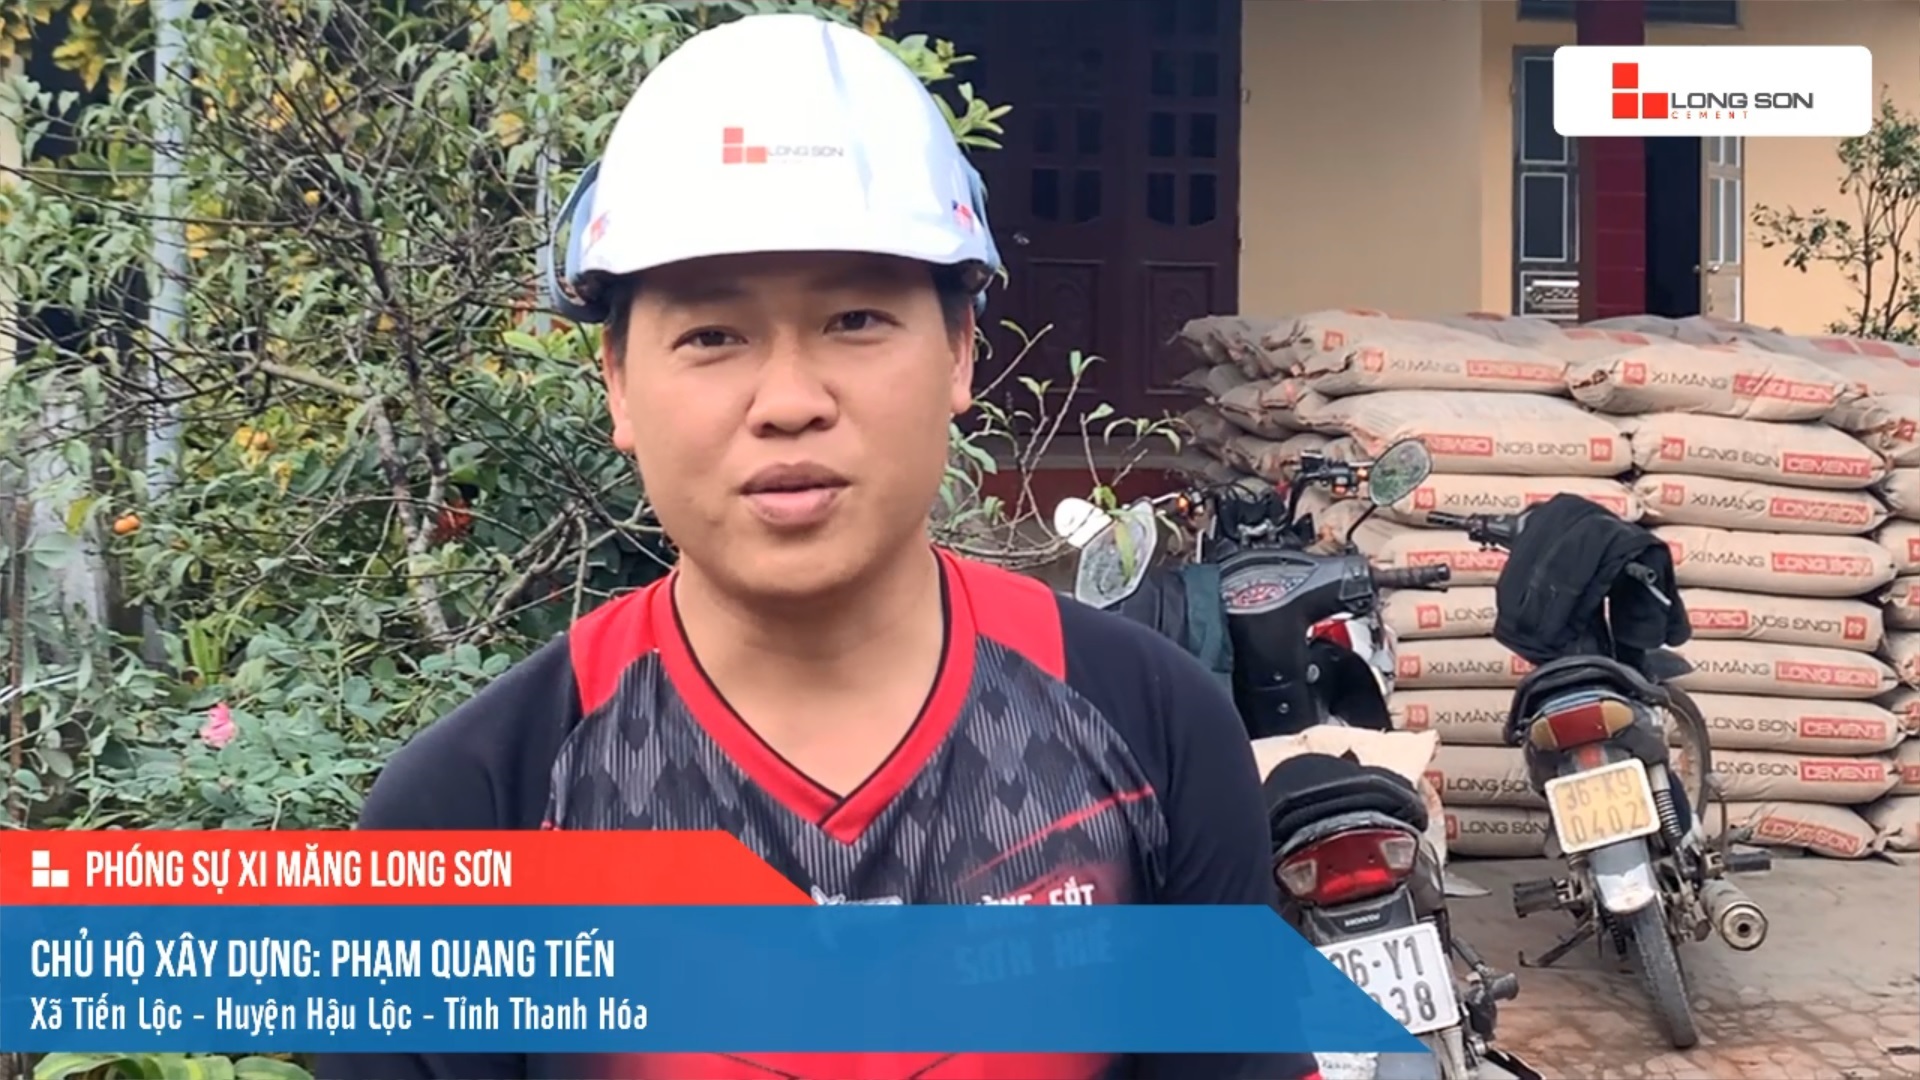 Phóng sự công trình sử dụng xi măng Long Sơn tại Thanh Hóa ngày 21/11/2021